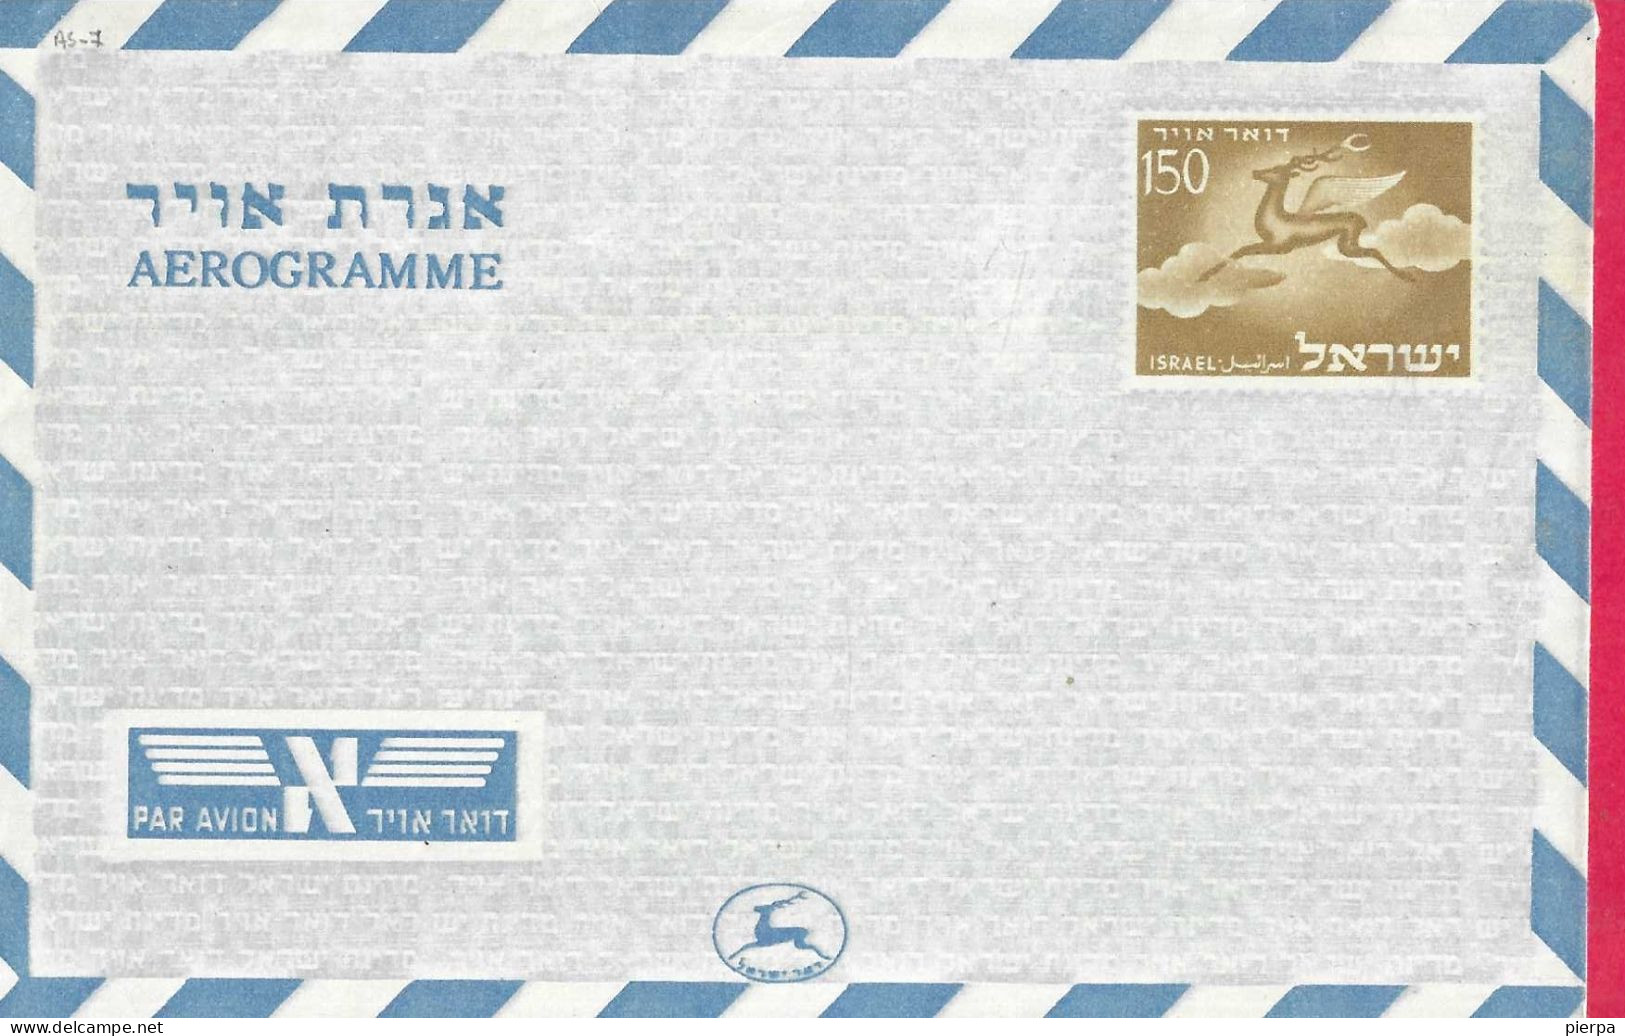 ISRAELE - INTERO AEROGRAMMA 150 - NUOVO - Luftpost